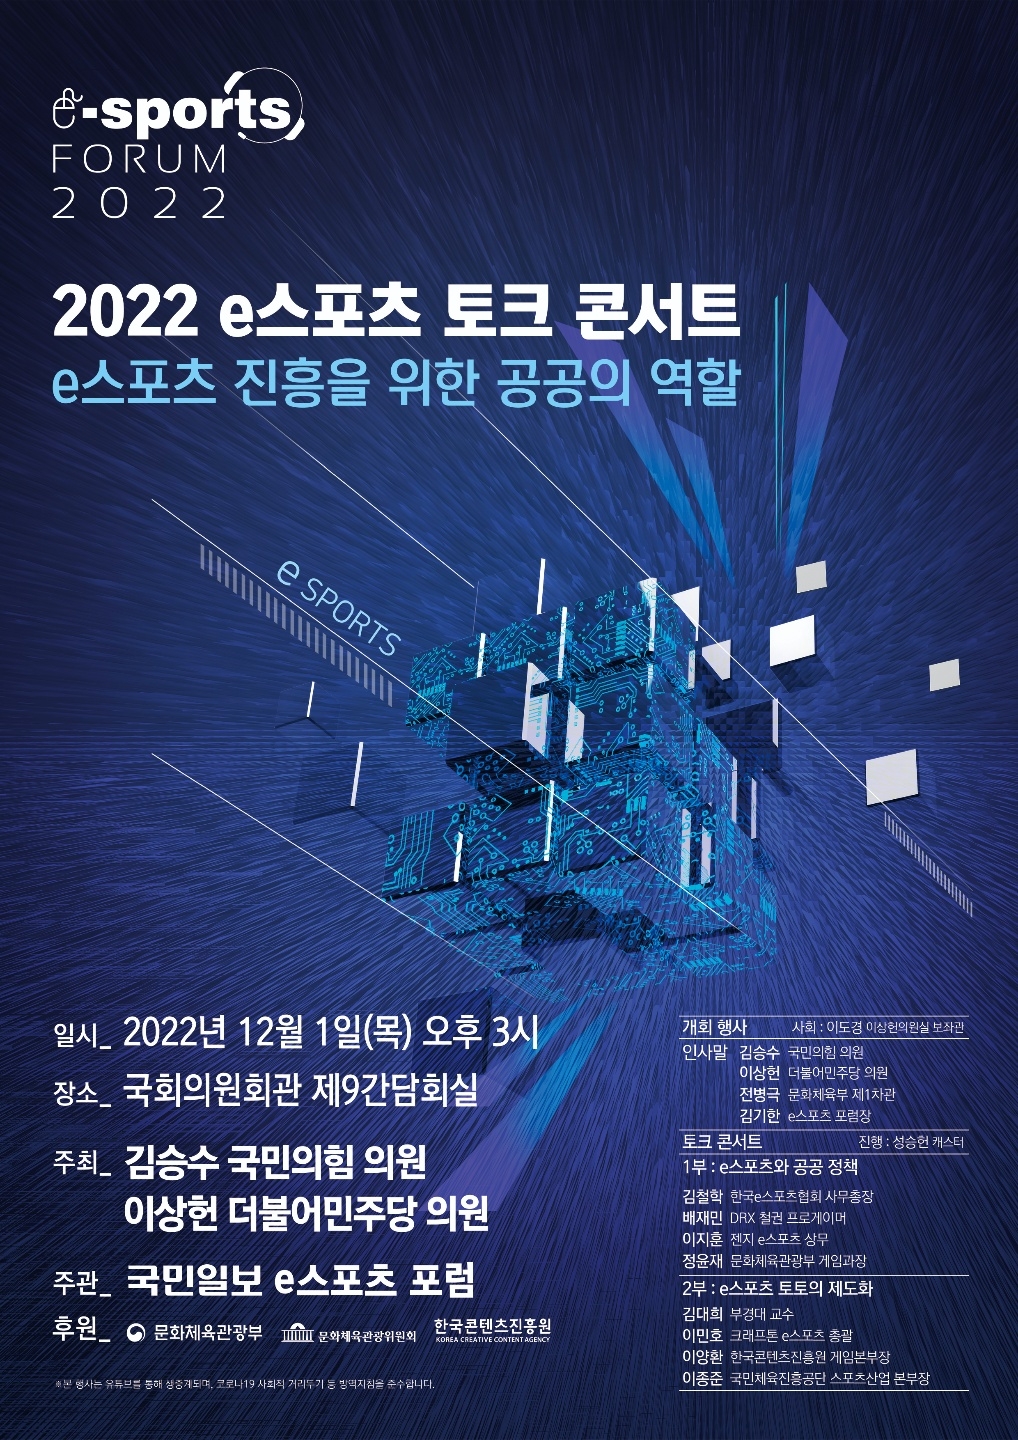 김승수·이상헌 의원, ‘2022 e스포츠 토크 콘서트’ 개최